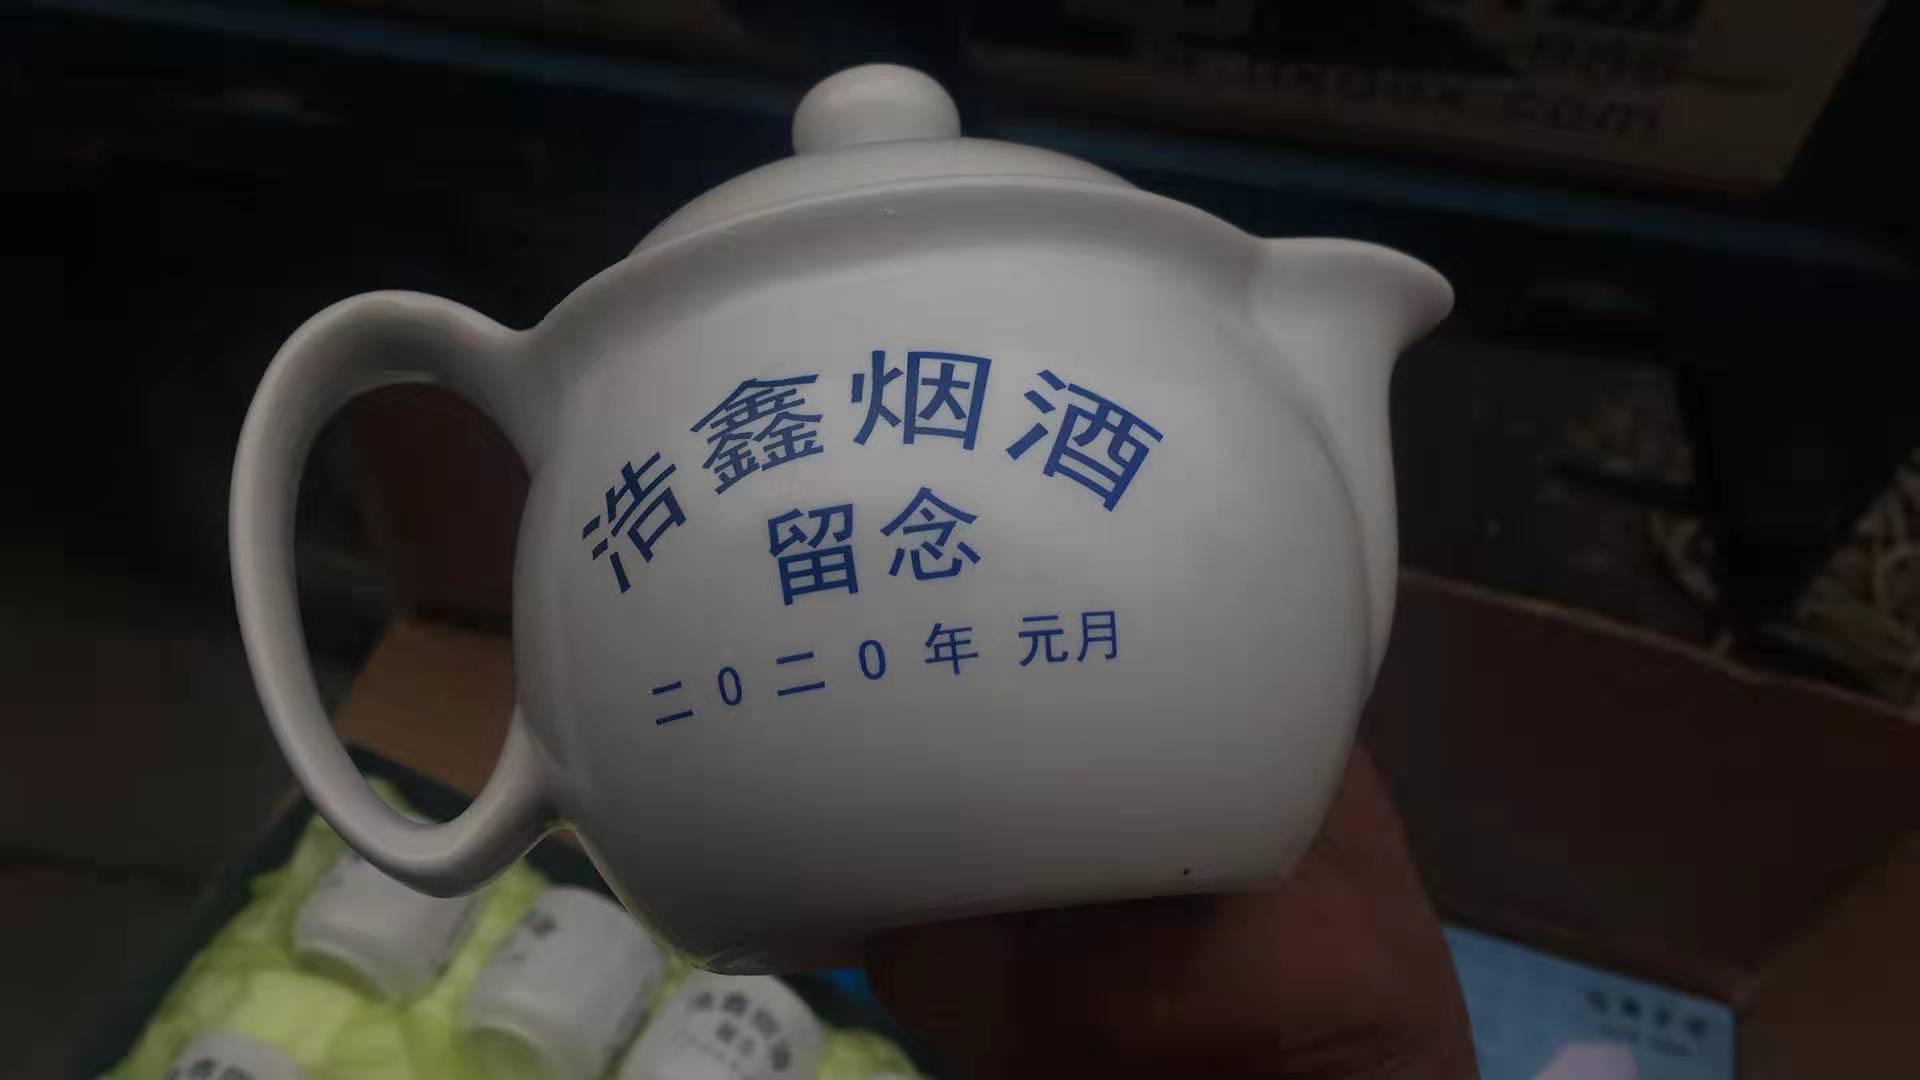 景德镇陶瓷茶具定做厂家 年终员工福利礼品瓷赠送 7头青花瓷家用过滤茶具茶杯 陶瓷套装定制logo